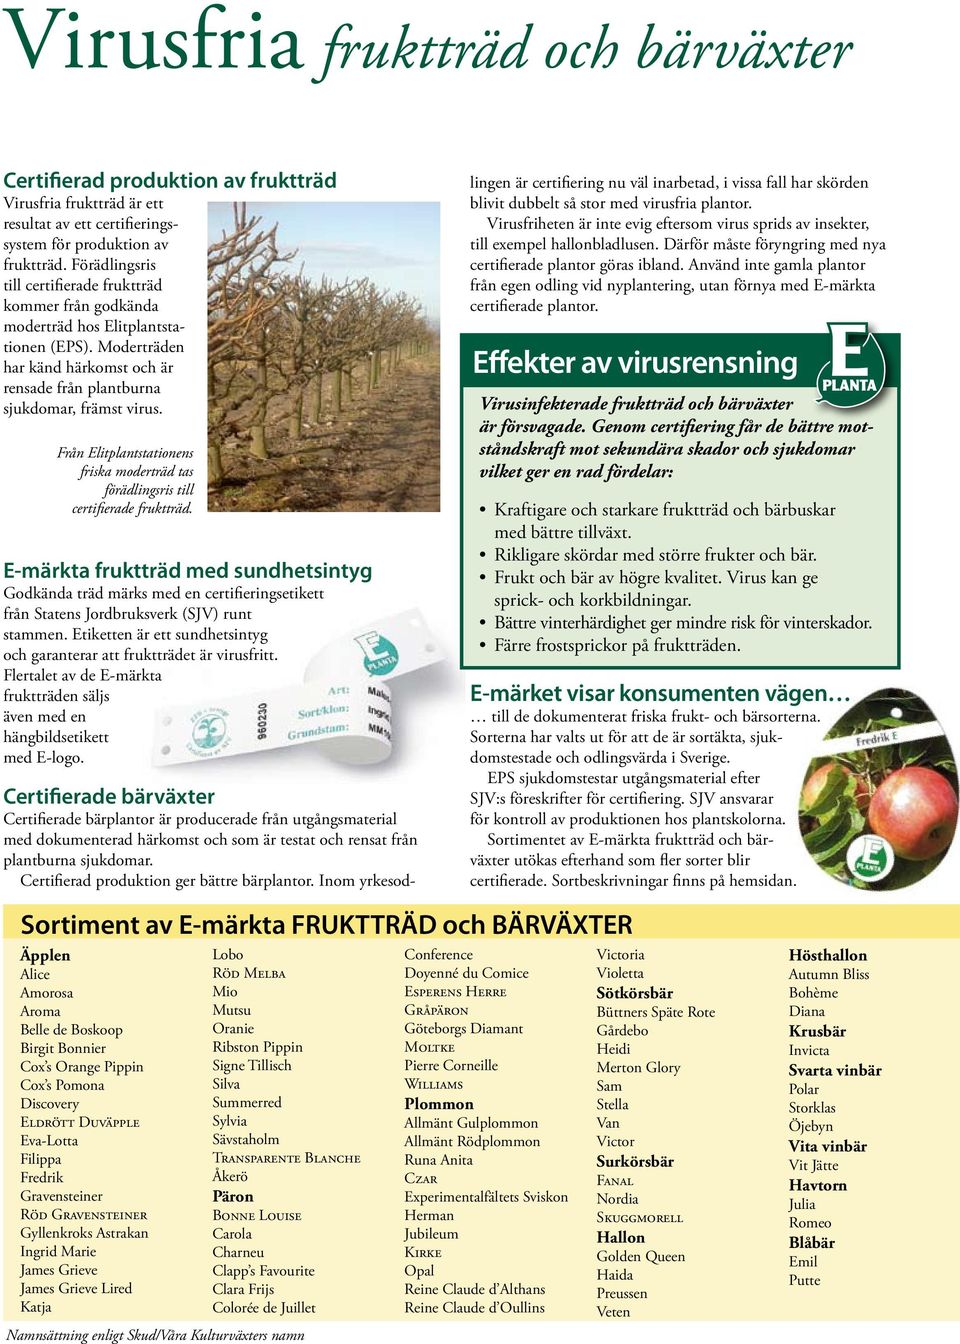 Från Elitplantstationens friska moderträd tas förädlingsris till certifierade fruktträd.